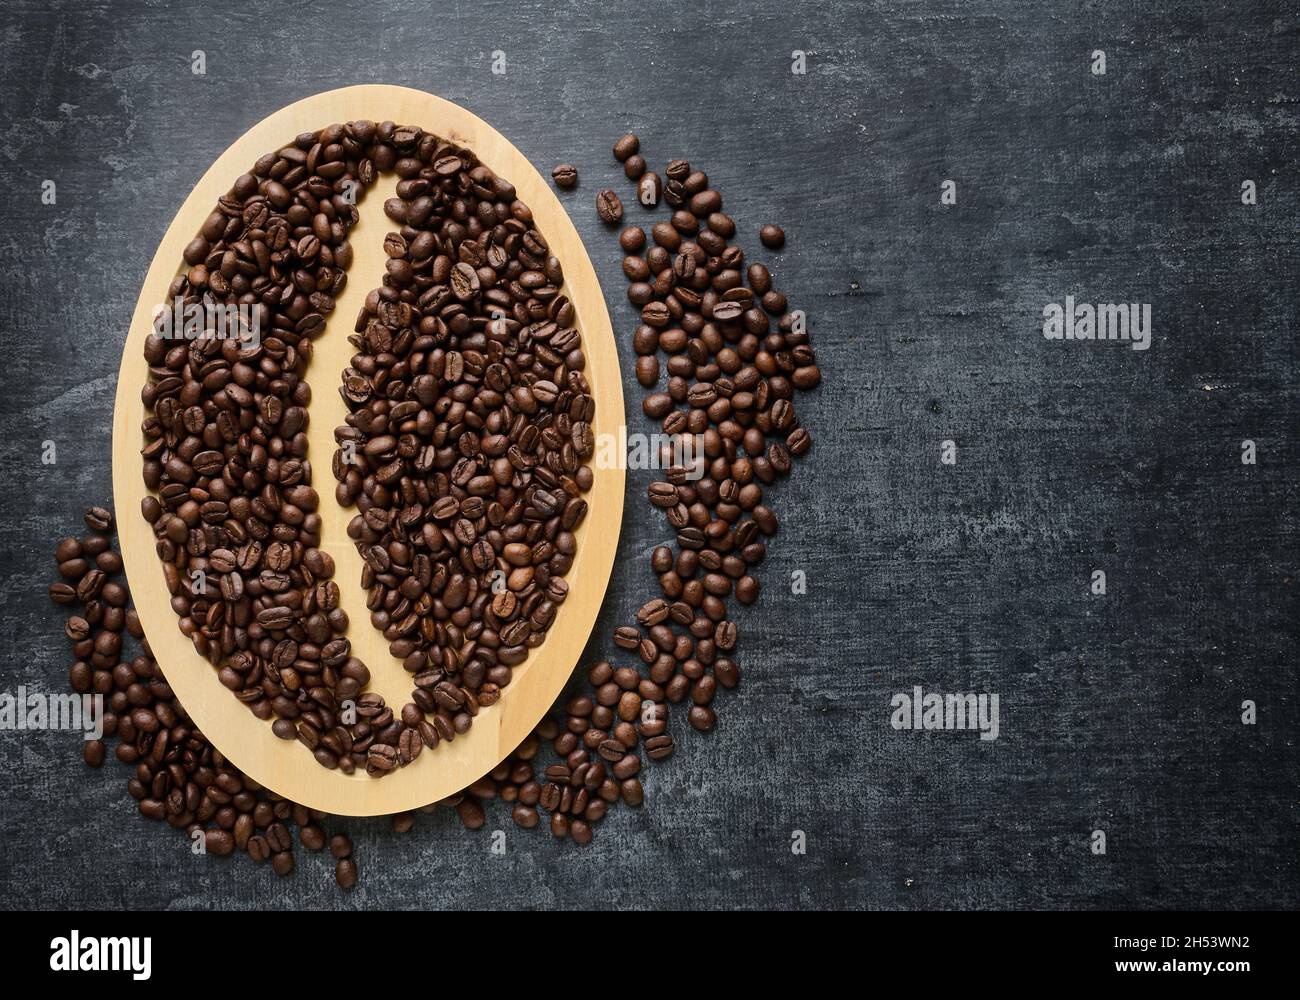 Frisch geröstete Kaffeebohnen auf einem Holzteller, grauer Grunge-Hintergrund mit Platz für Text Stockfoto